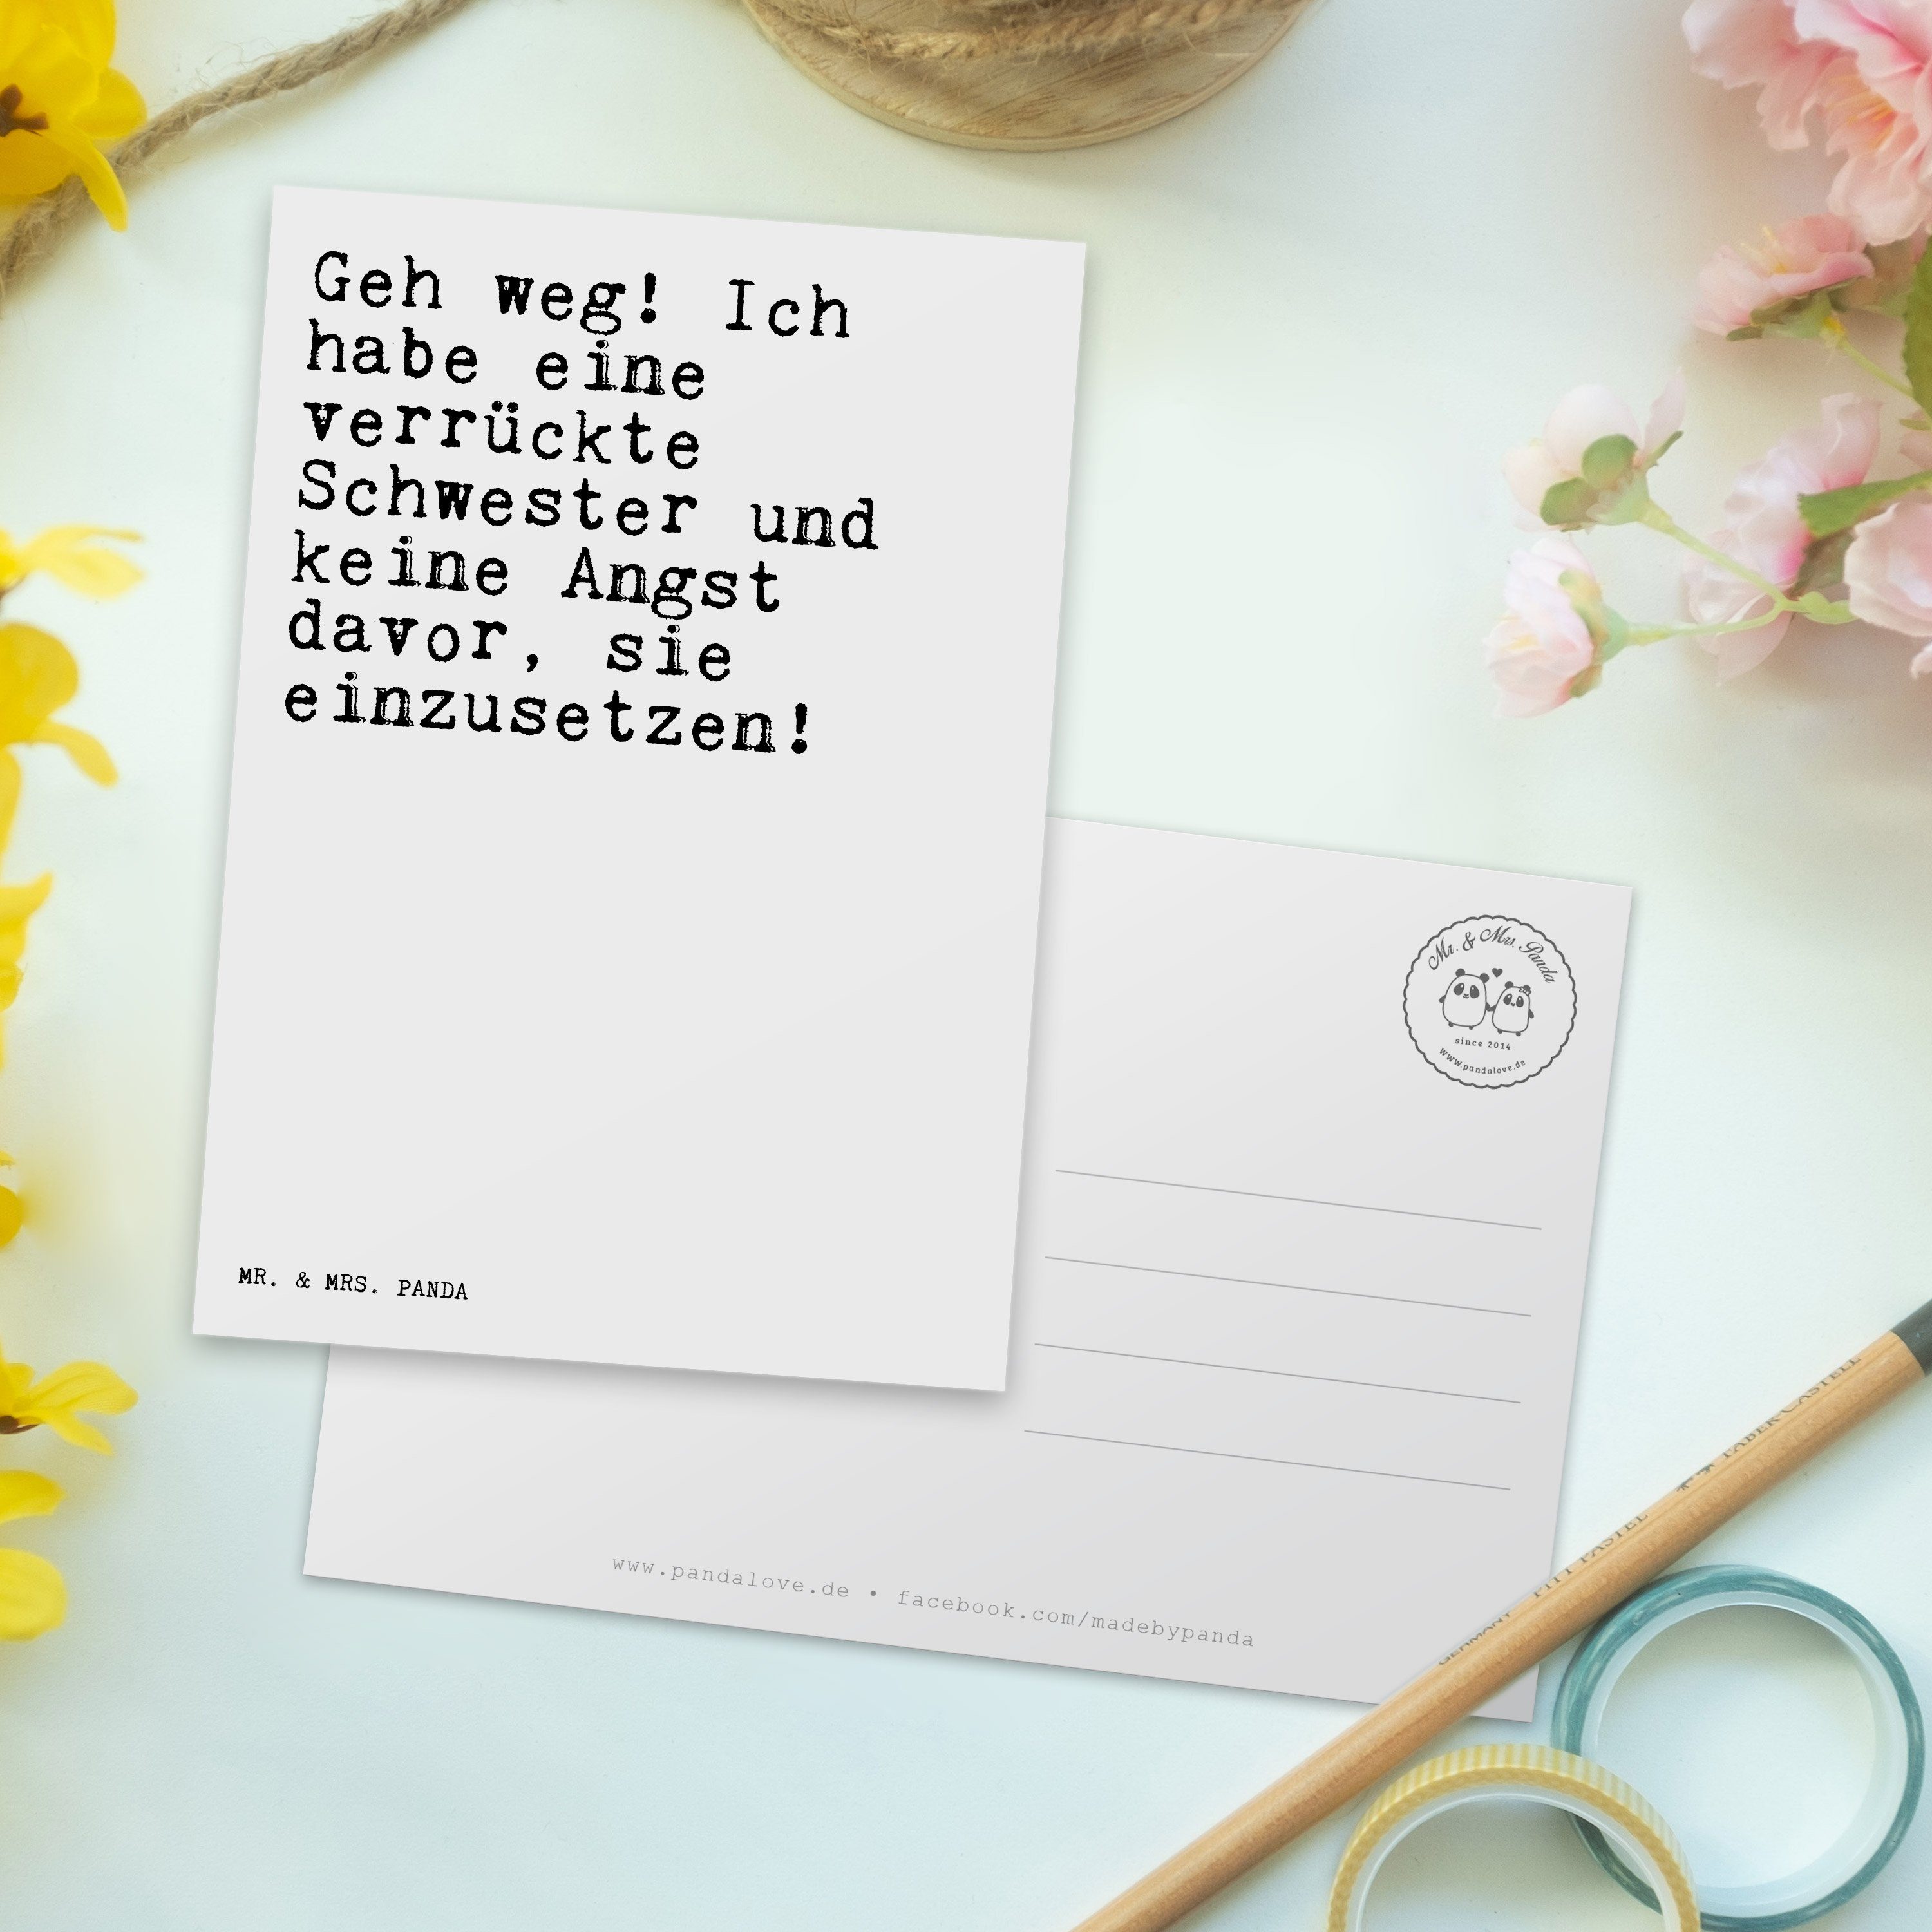 Mr. & Mrs. Panda weg! Geburtstagskar - Zitate, Geh Postkarte Ich Weiß habe... Geschenk, - Zitat